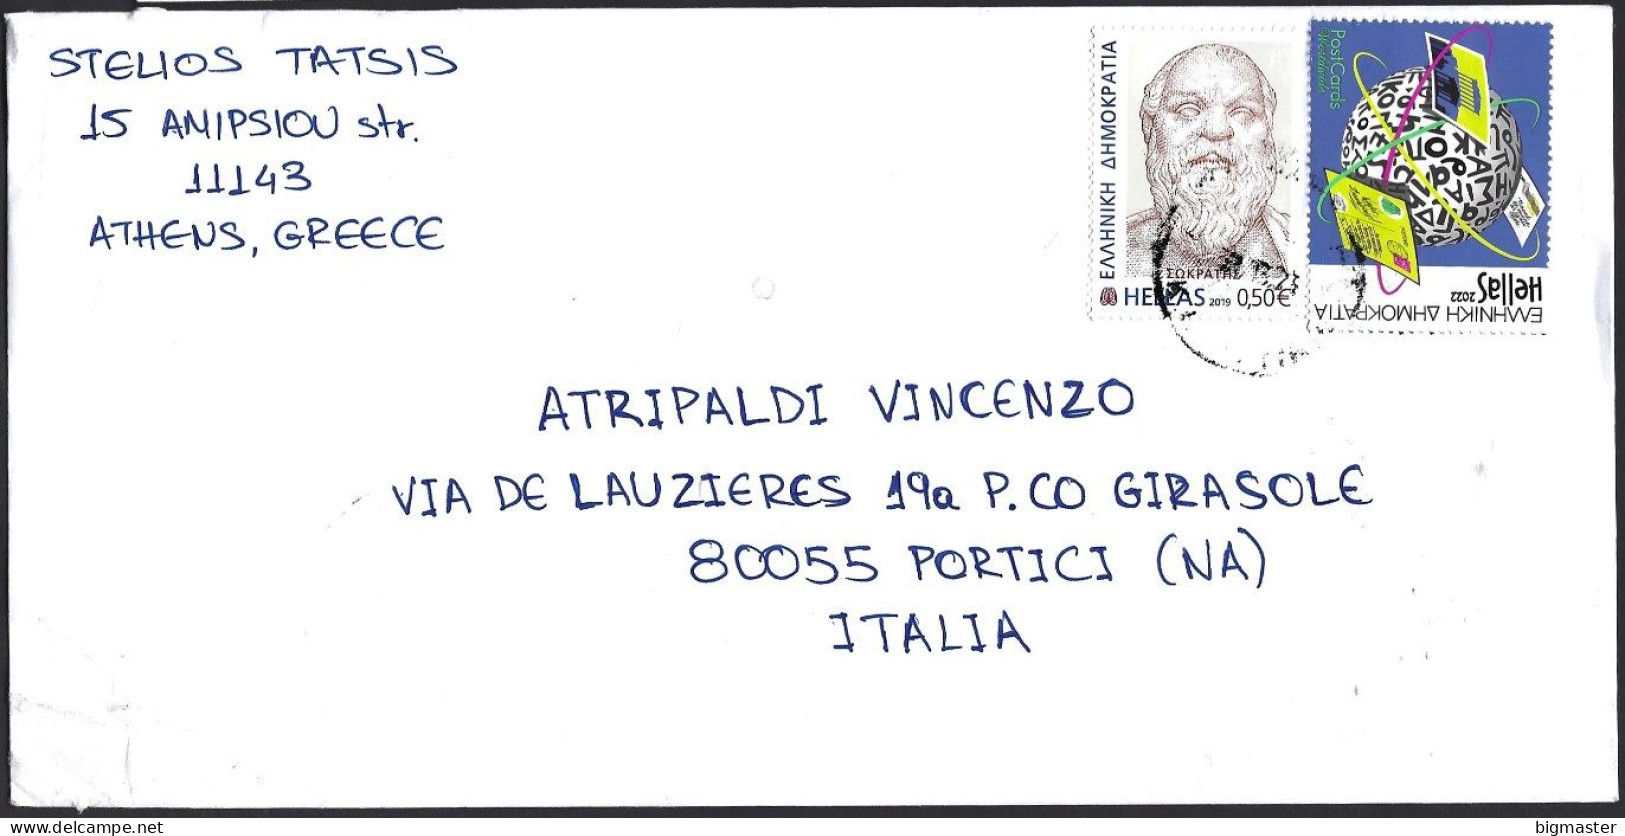 Str. EU-Grecia SP 2023 Postamail For Italy  2 VAL.fu - Briefe U. Dokumente